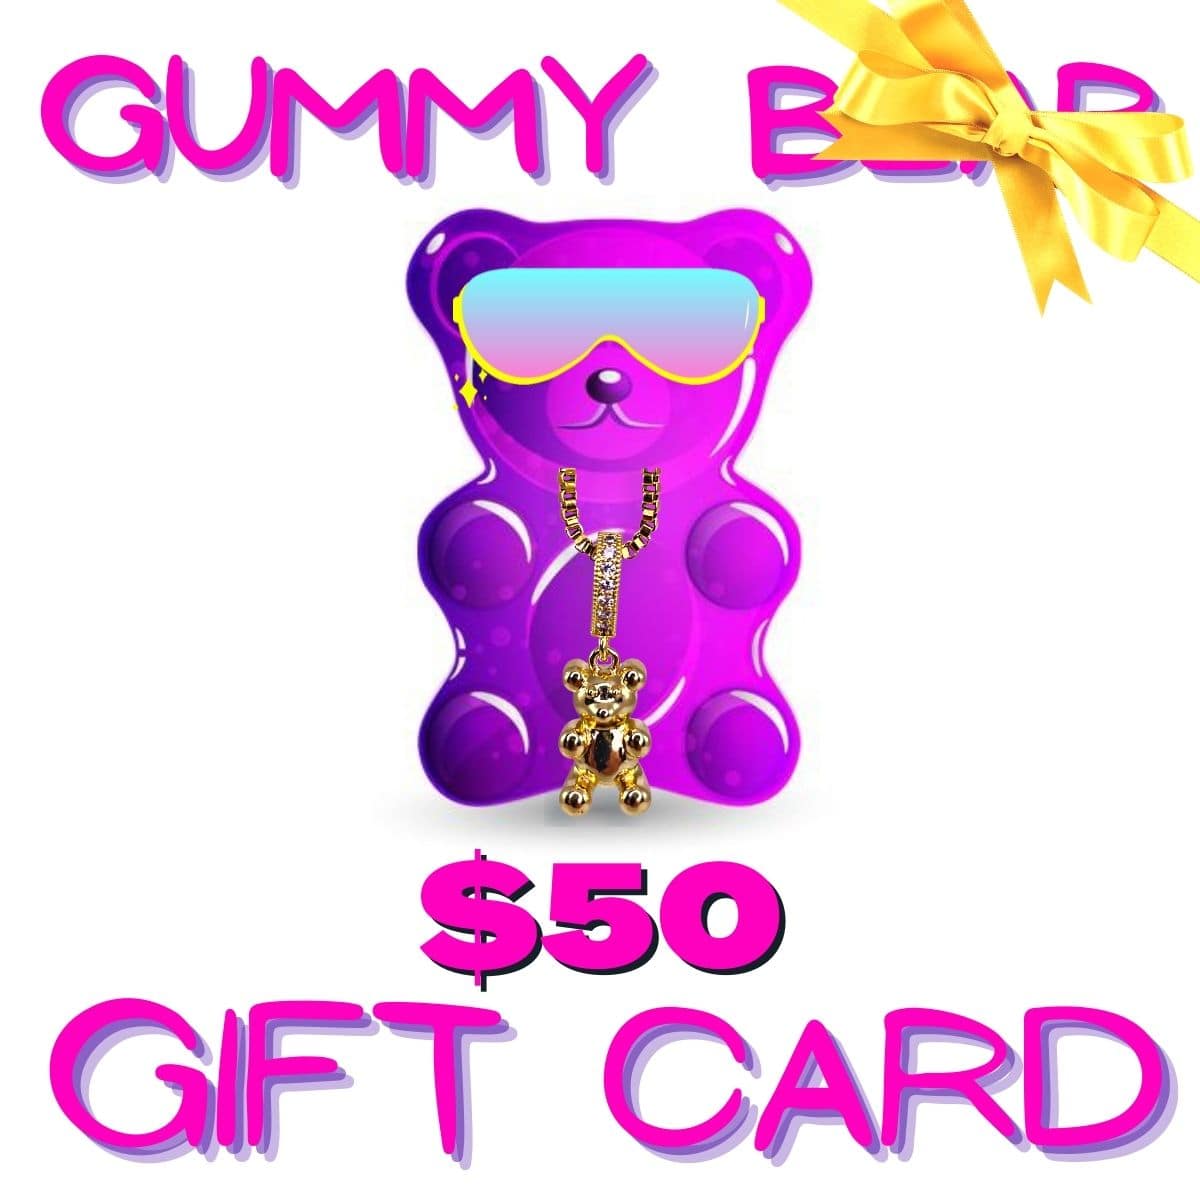 gummy bear bling $50 gift card - gummy bear bling